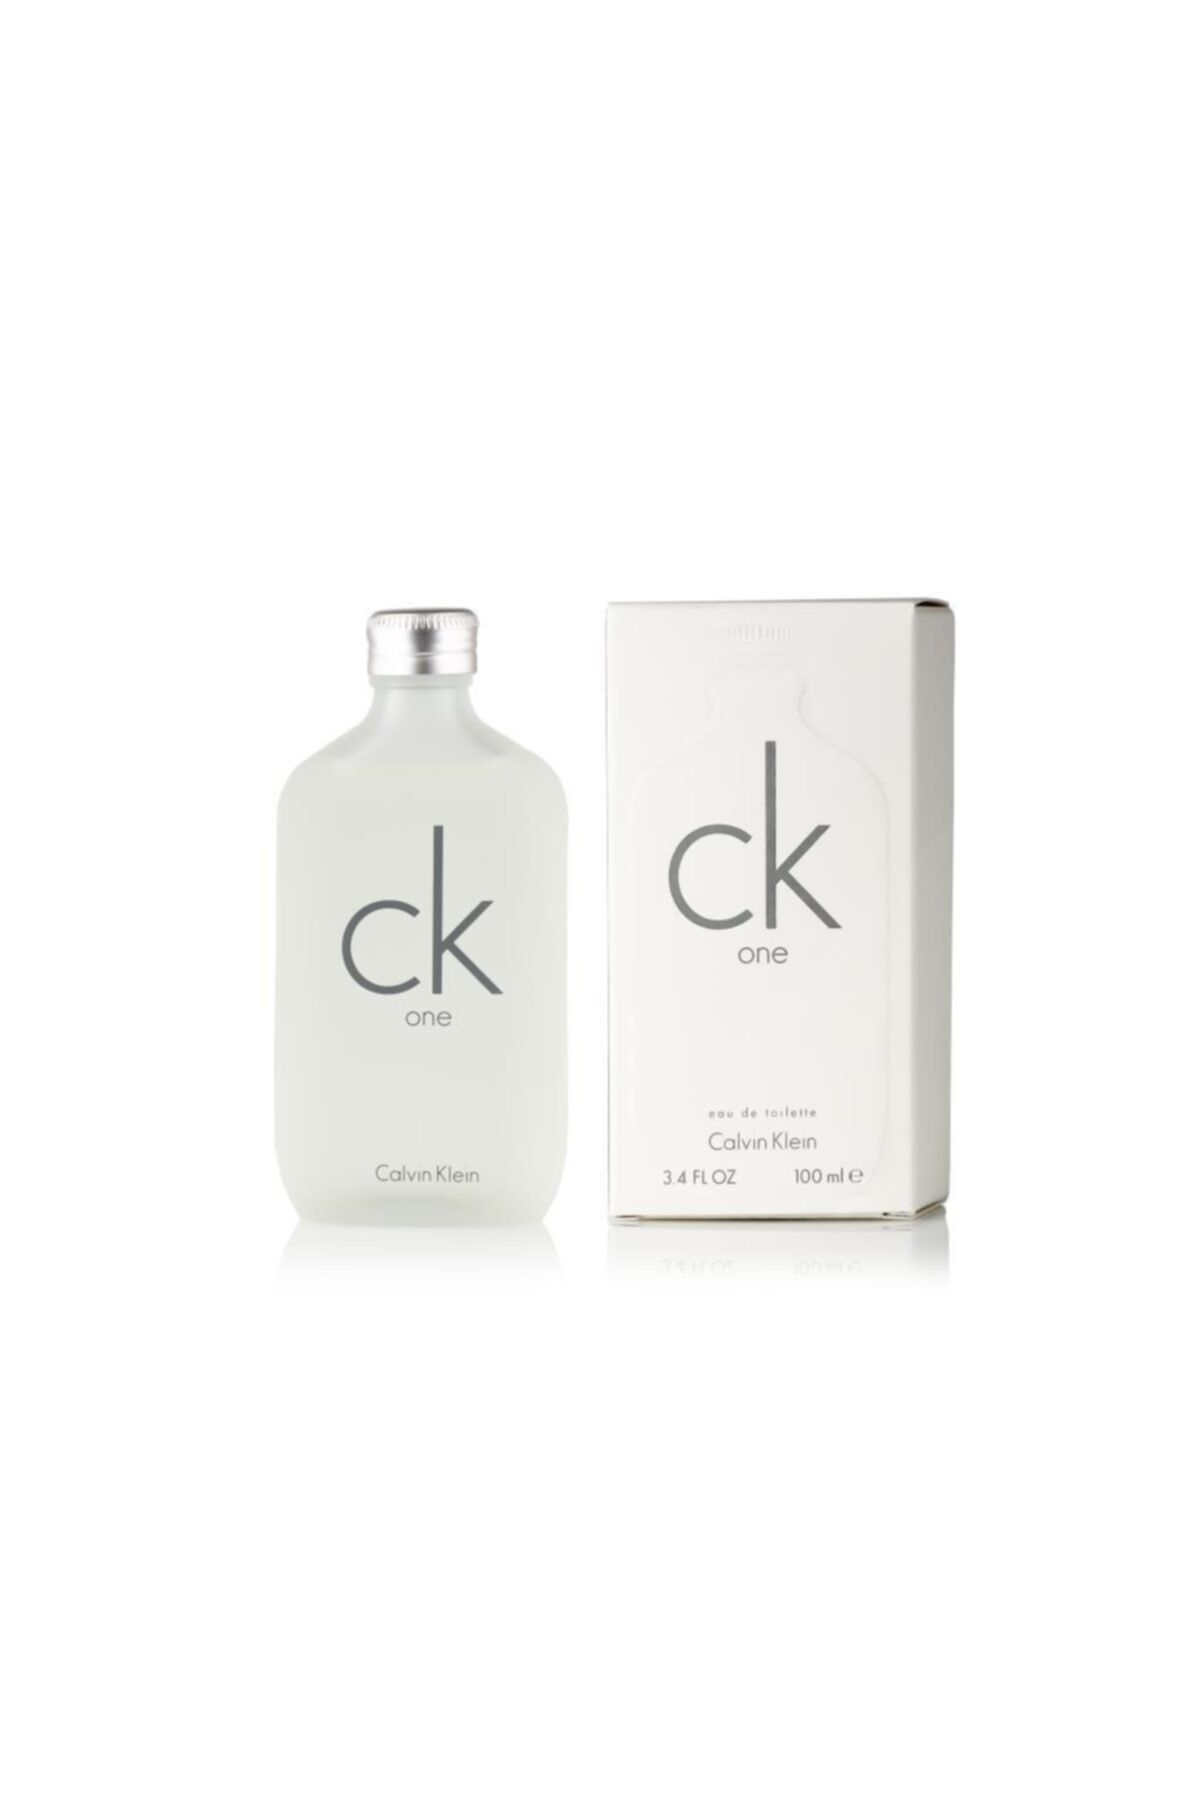 Calvin Klein One Edt 100 ml Erkek Parfüm 088300107407